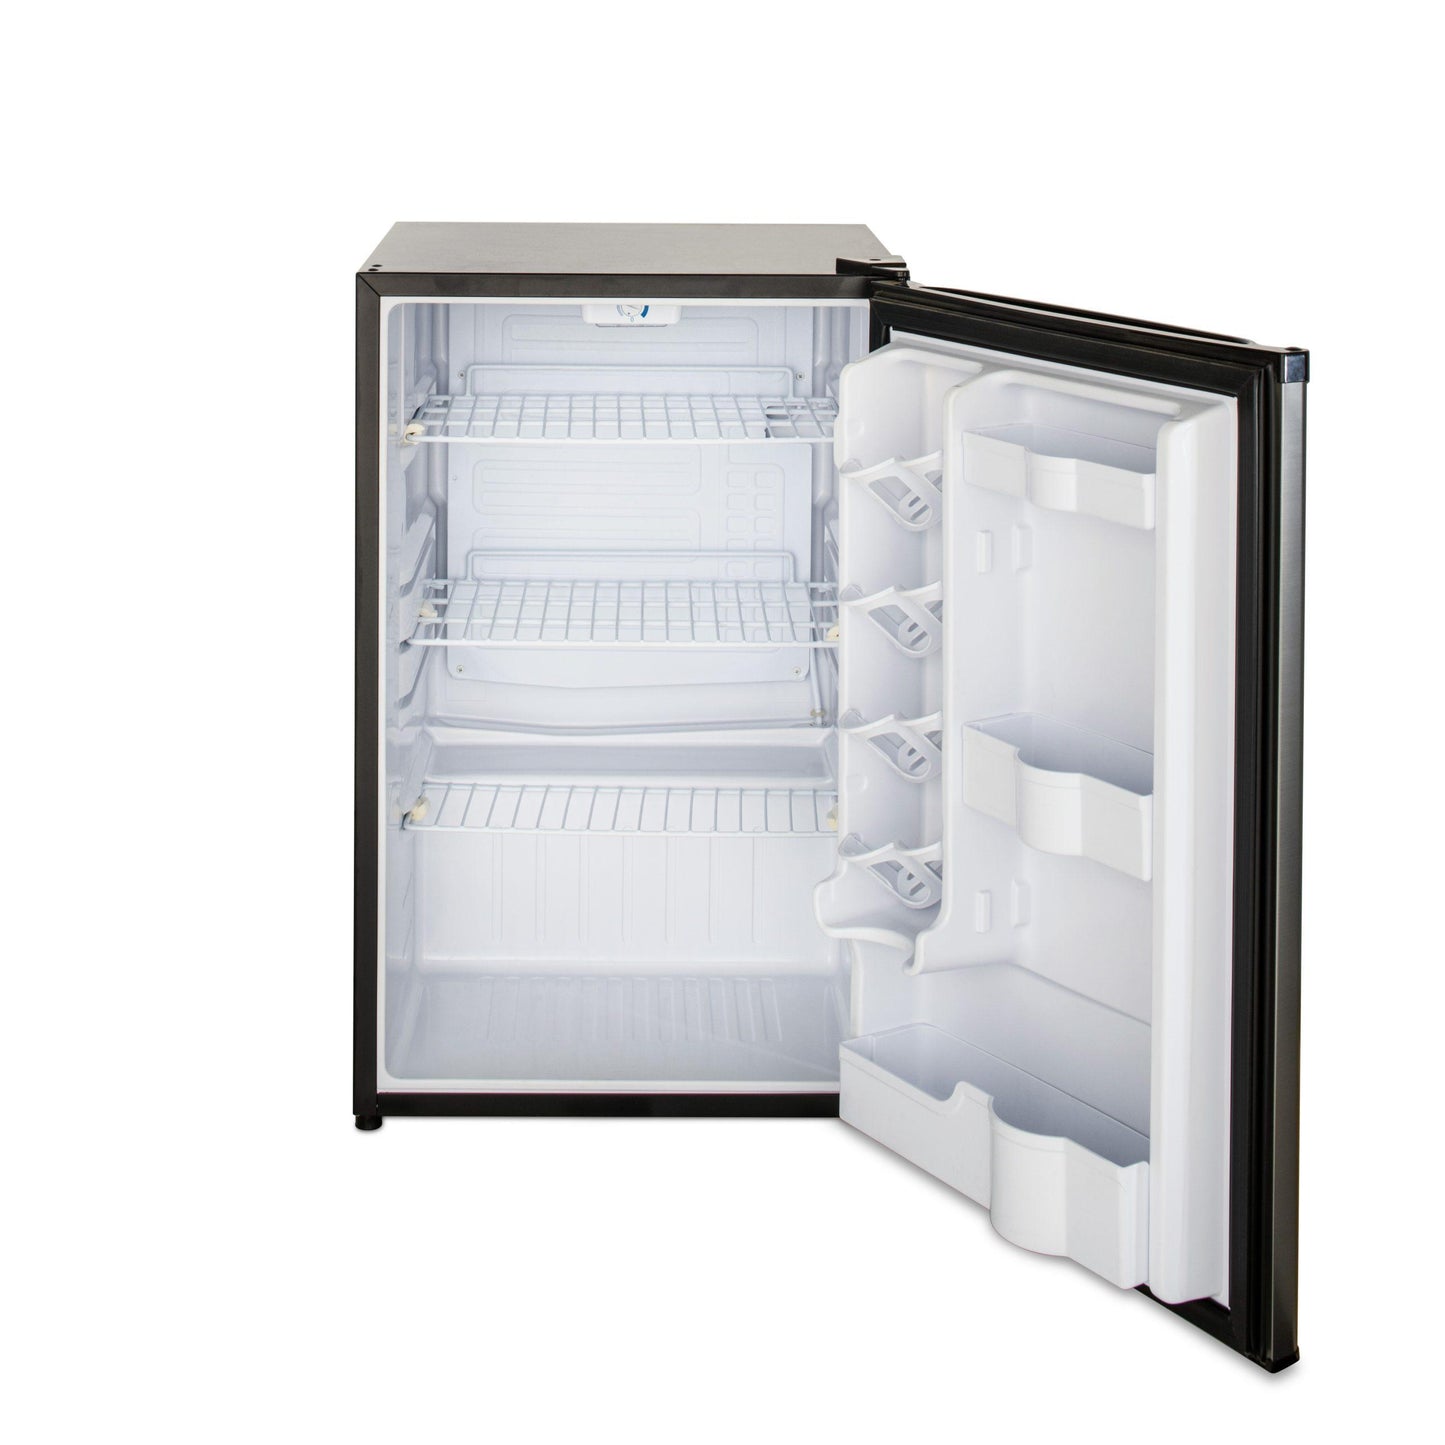 Blaze Grills BLZSSRF126 20" Outdoor Compact Refrigerator